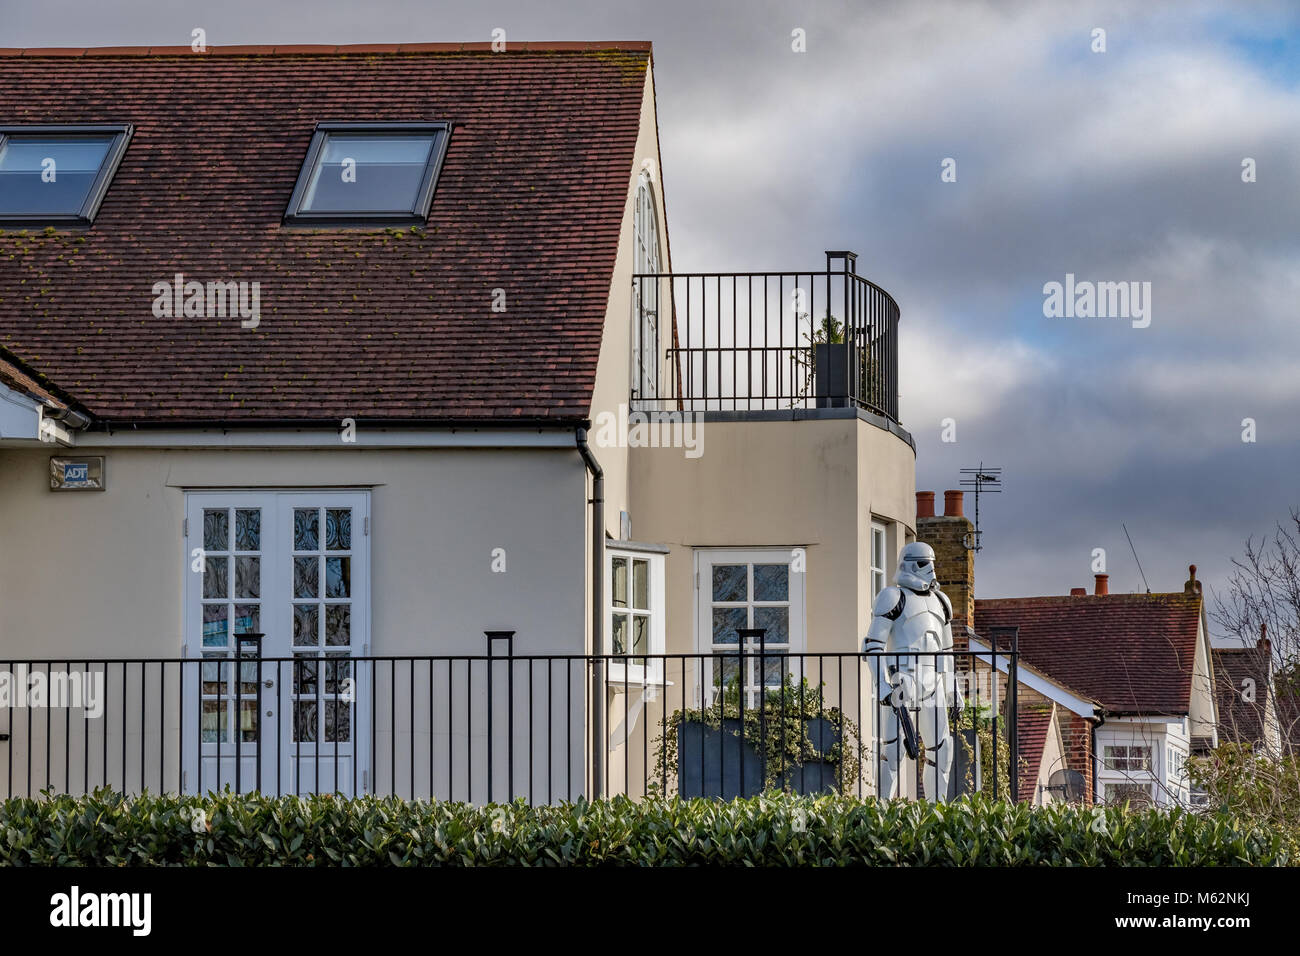 Une maison dans une banlieue de Londres avec un lifesize Star Wars stormtrooper sur le balcon Banque D'Images